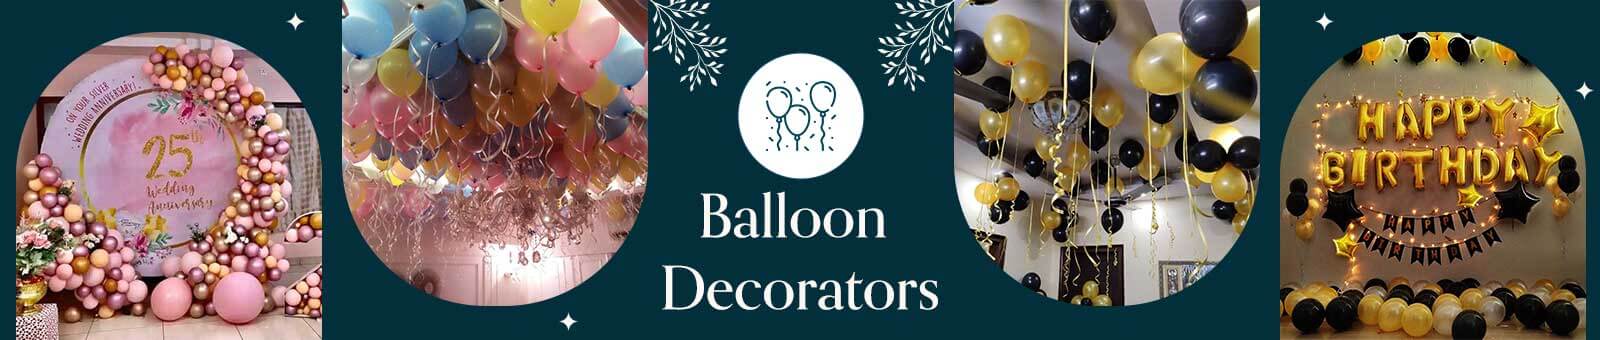 Balloon Decorators in Kolkata